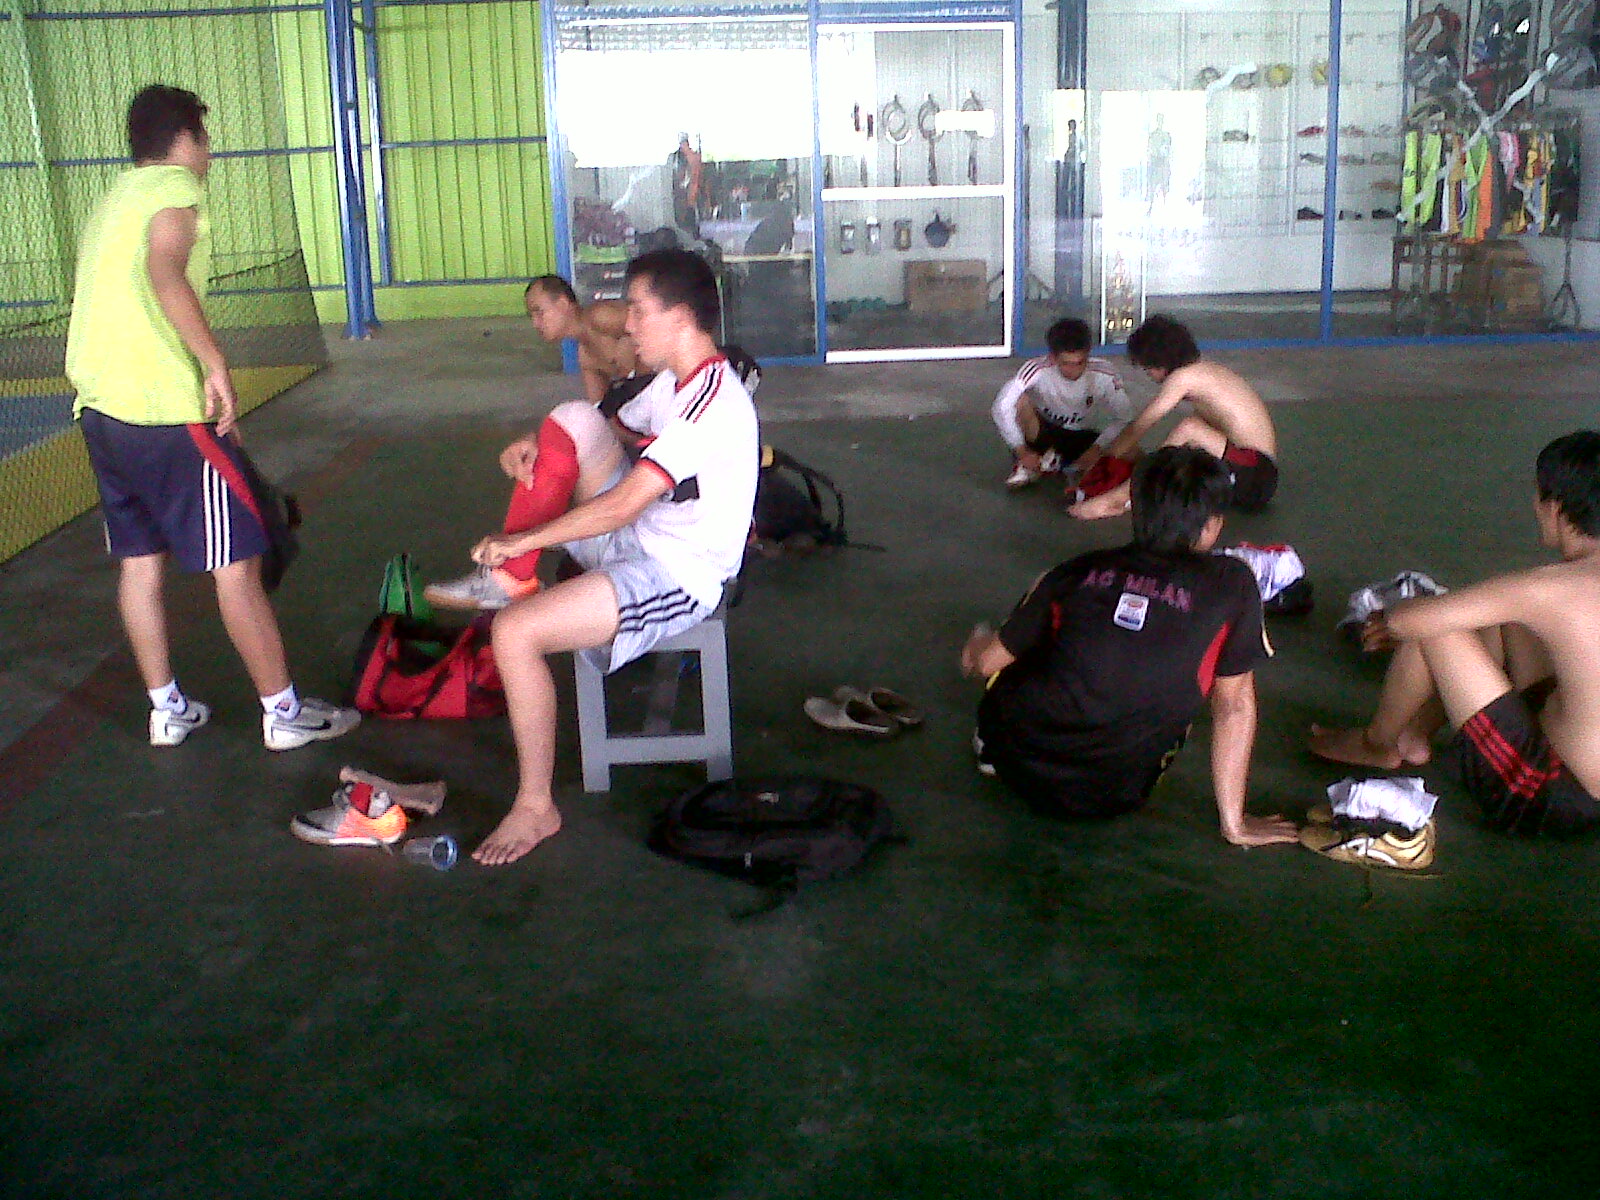 program latihan fisik futsal tactics